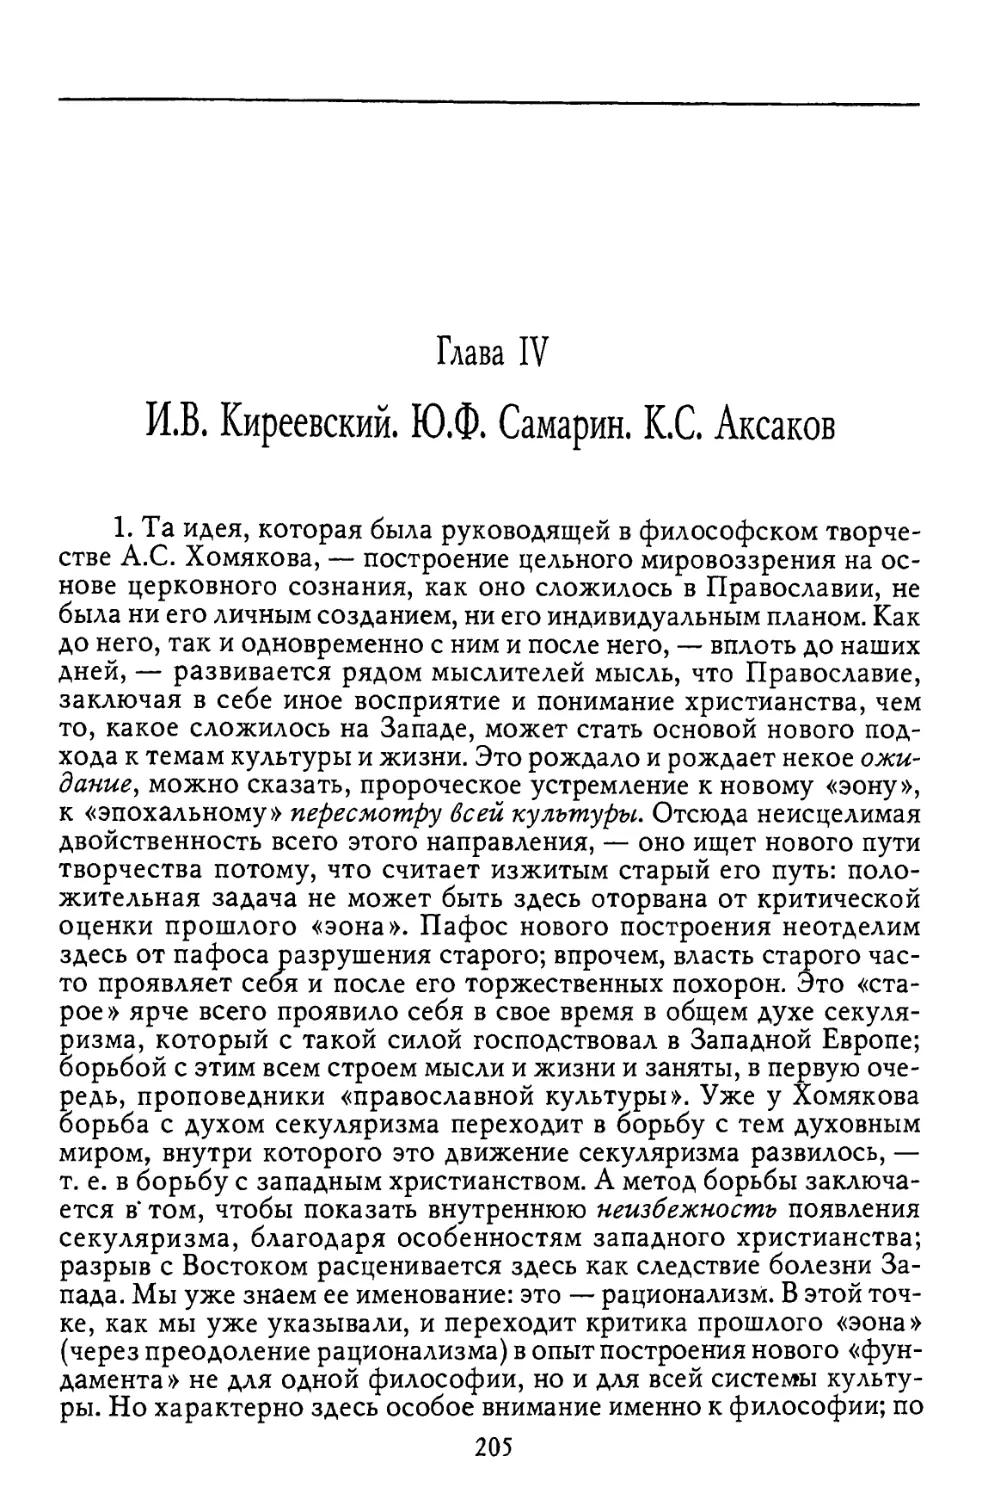 Глава IV. И.В. Киреевский, Ю.Ф. Самарин, К.С.Аксаков